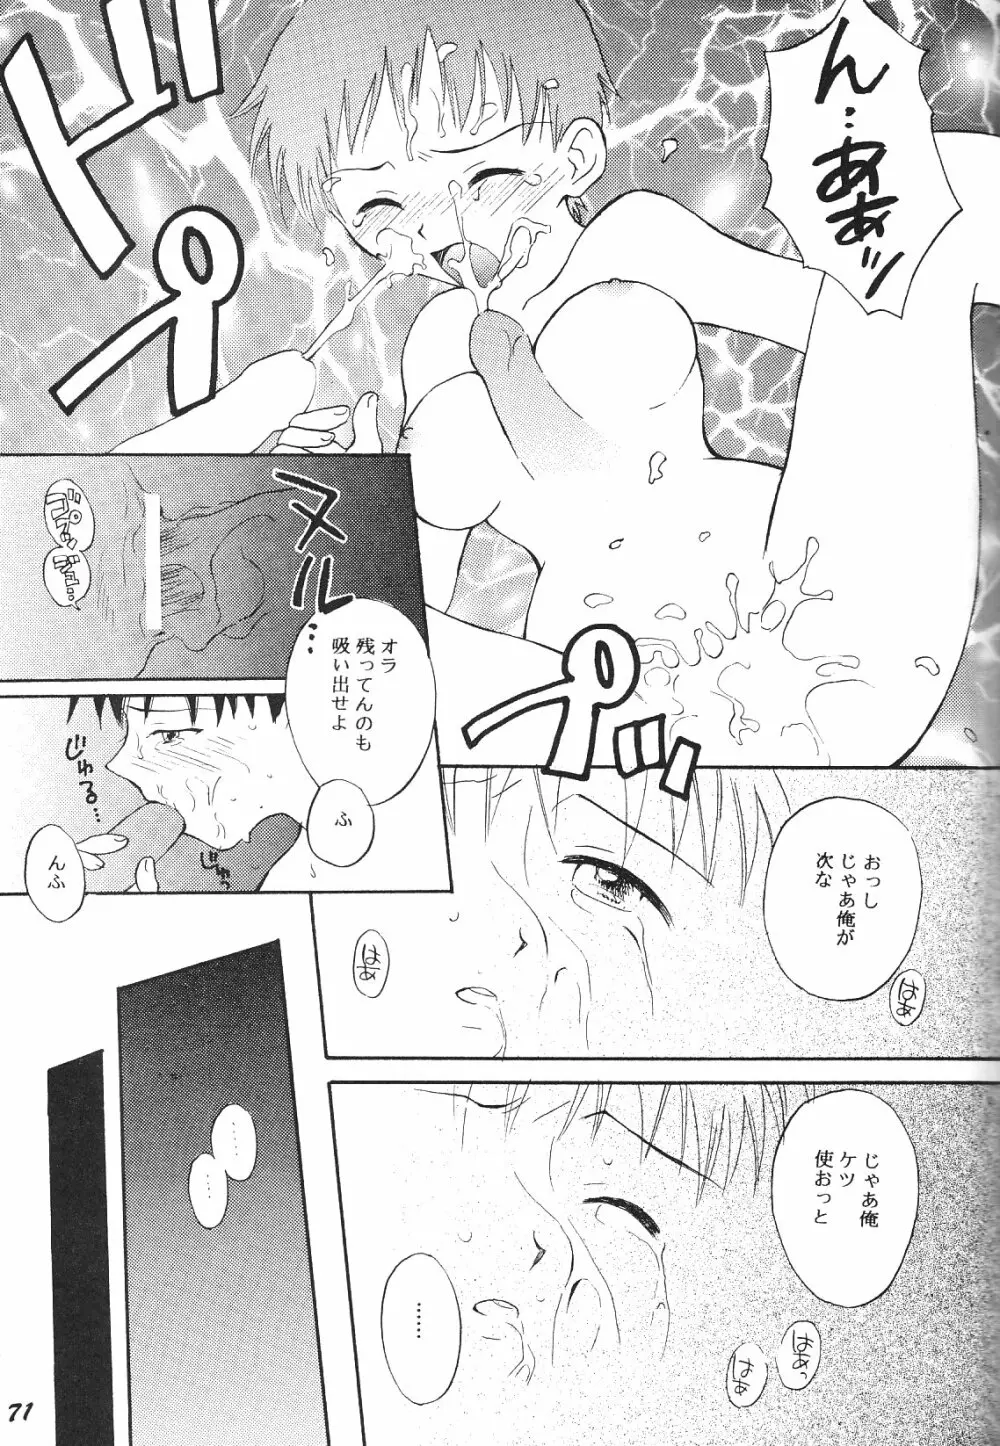 Maniac Juice 女シンジ再録集 '96-'99 - page71